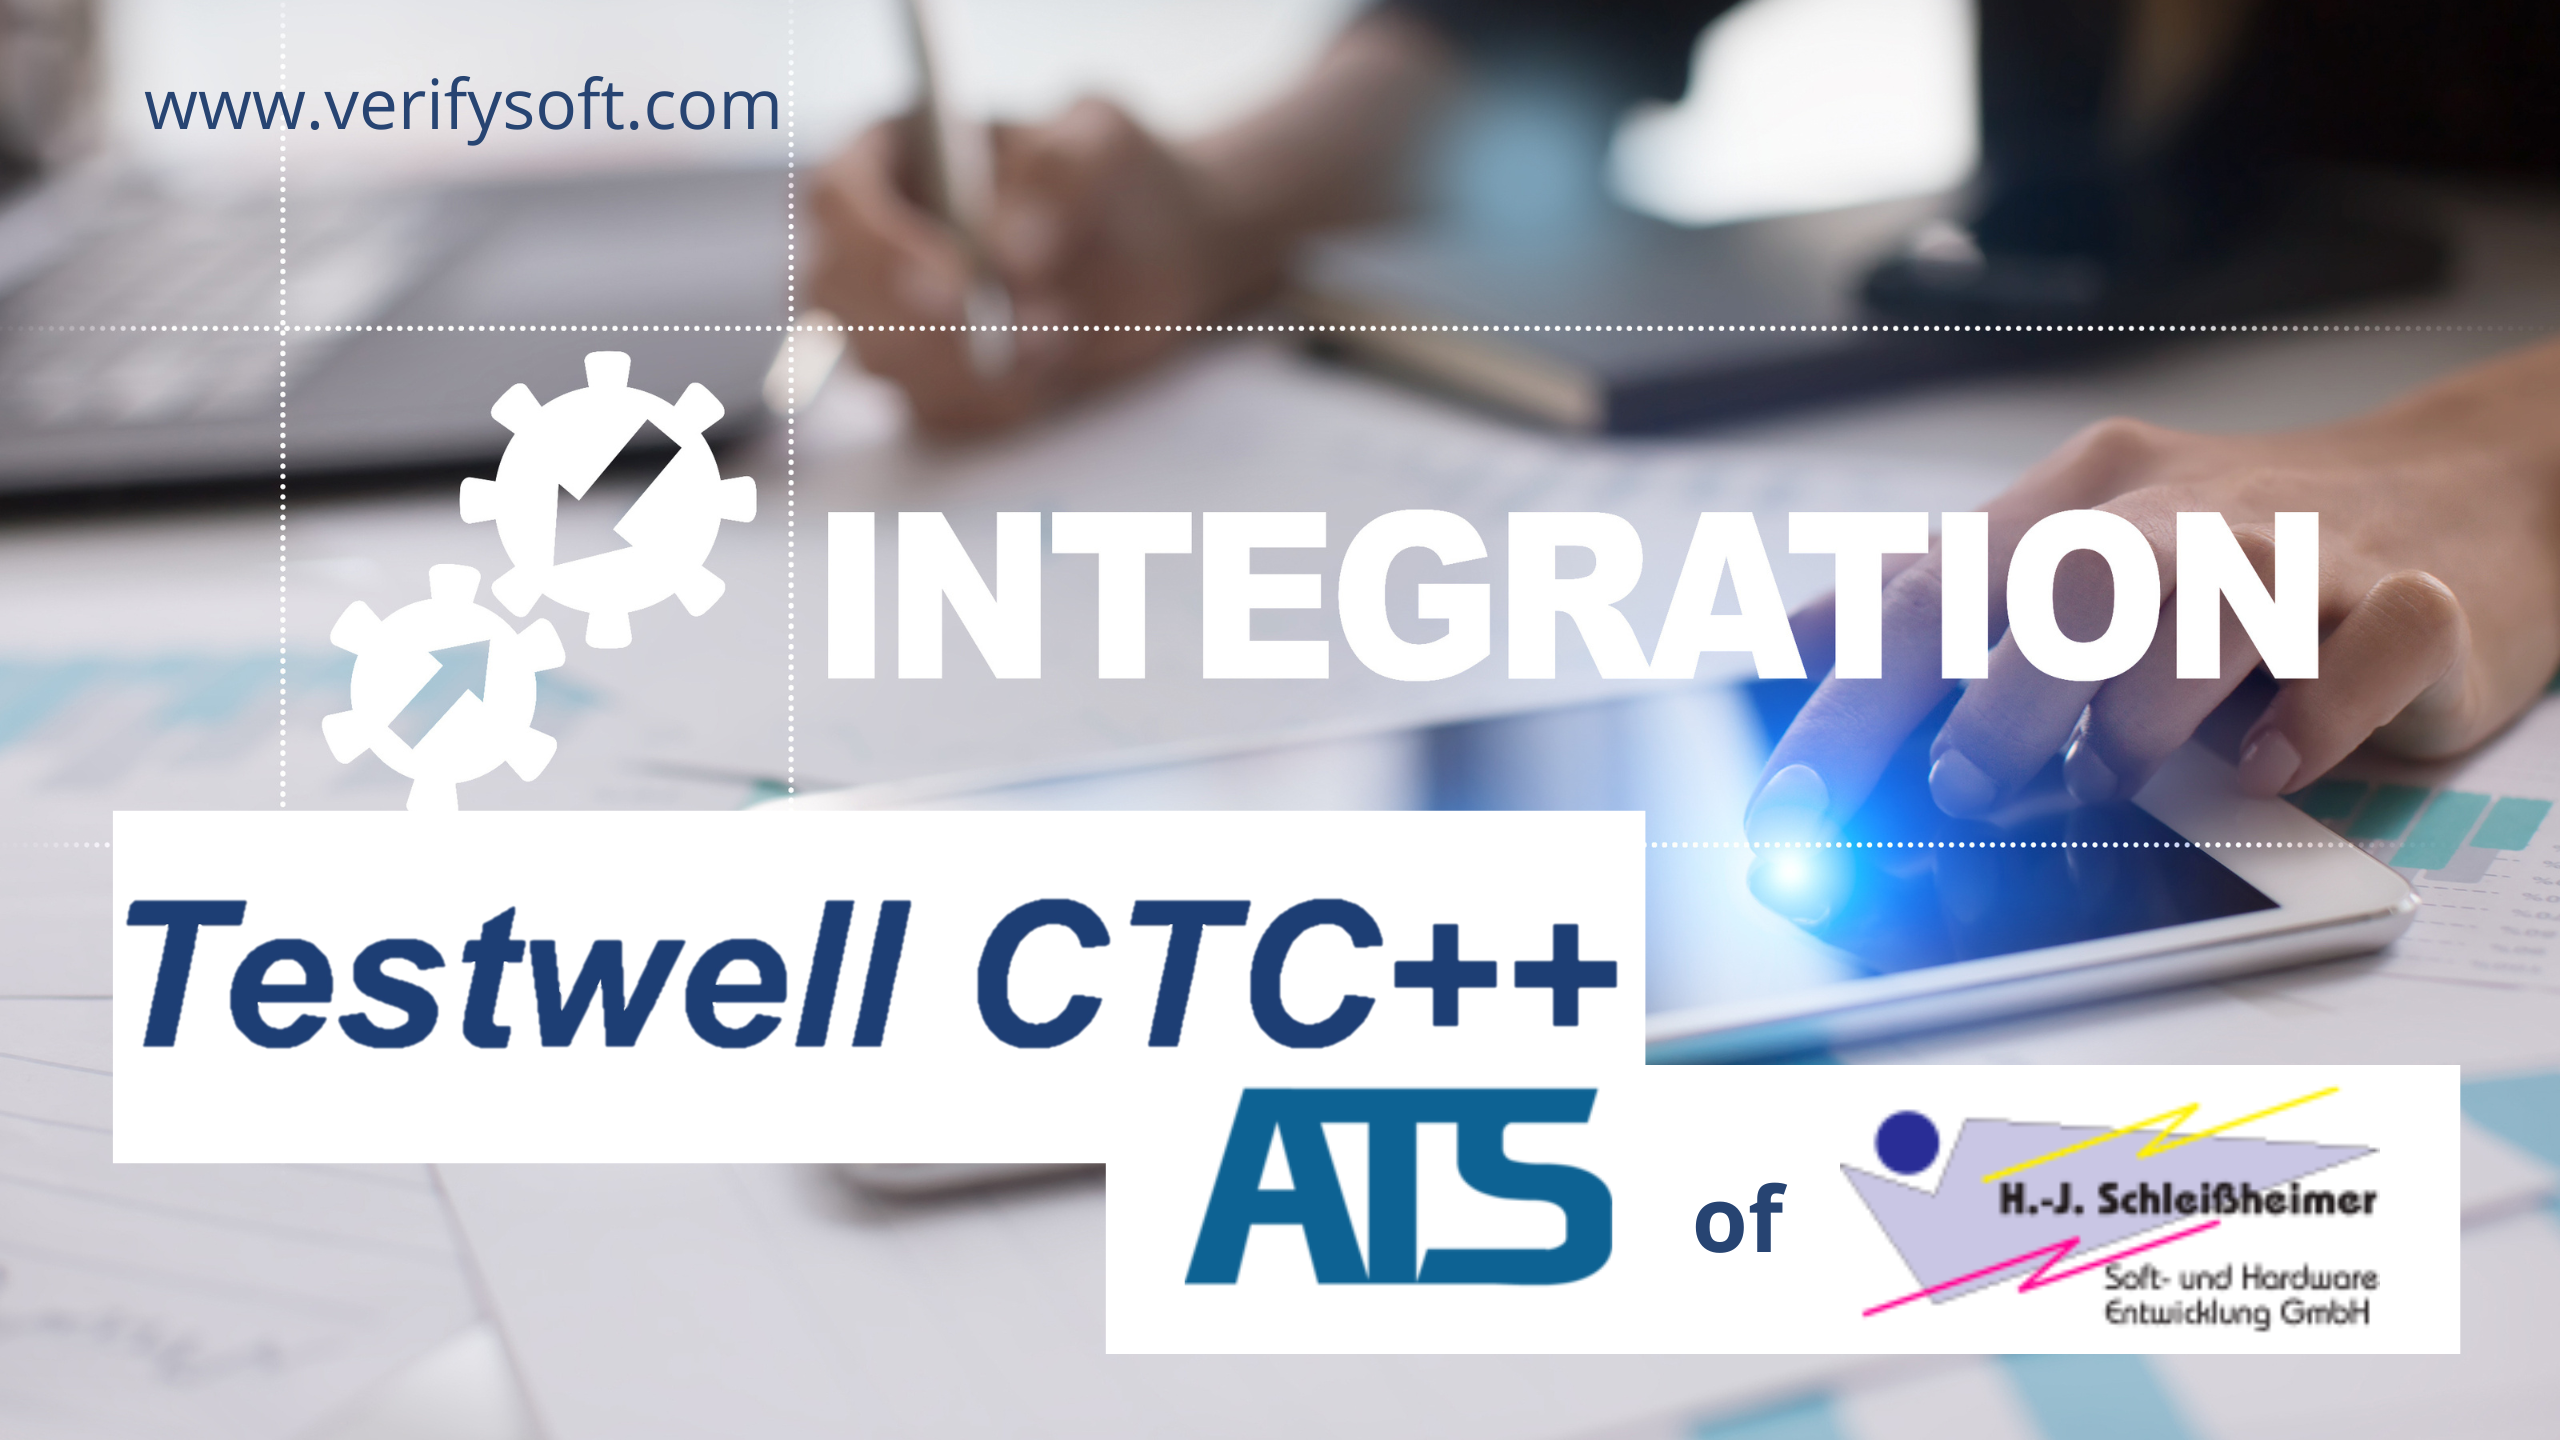 ATS Testwell CTC++